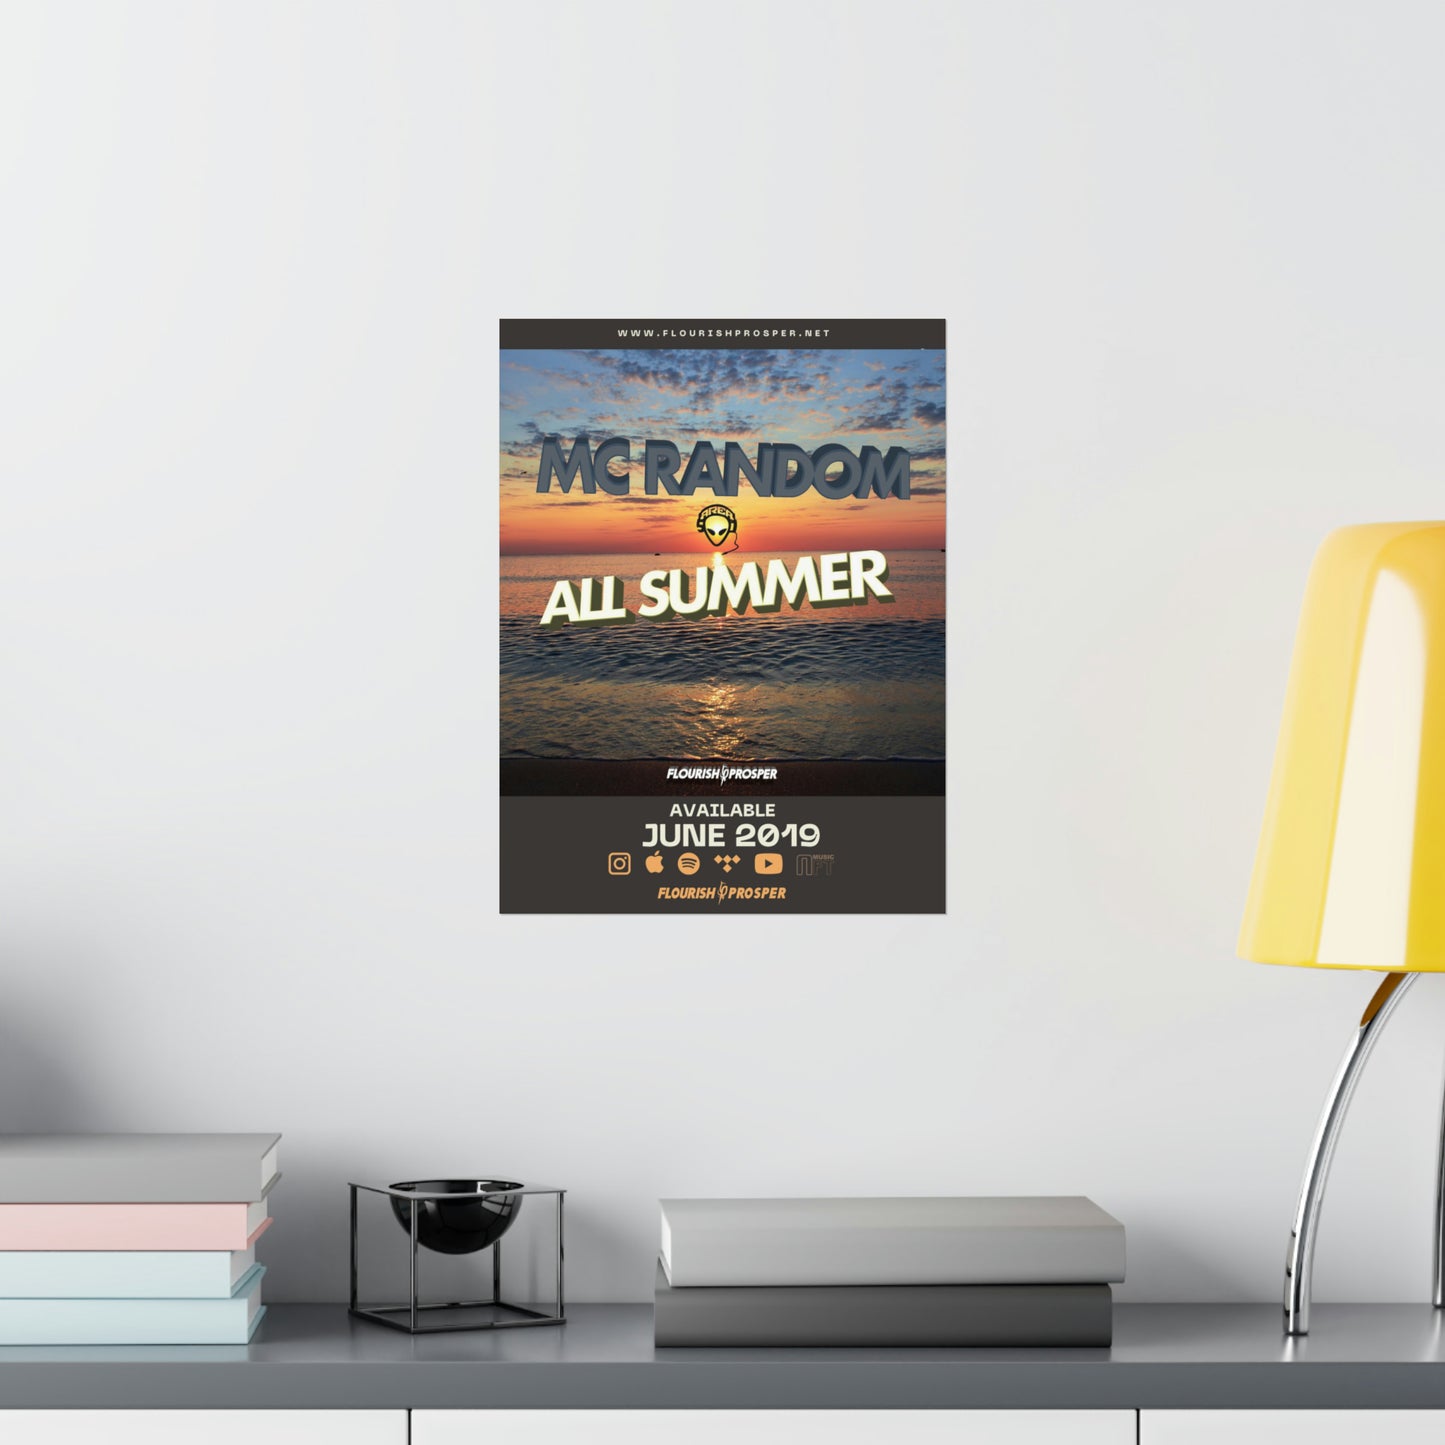 MC Random "All Summer" Matte Vertical Posters